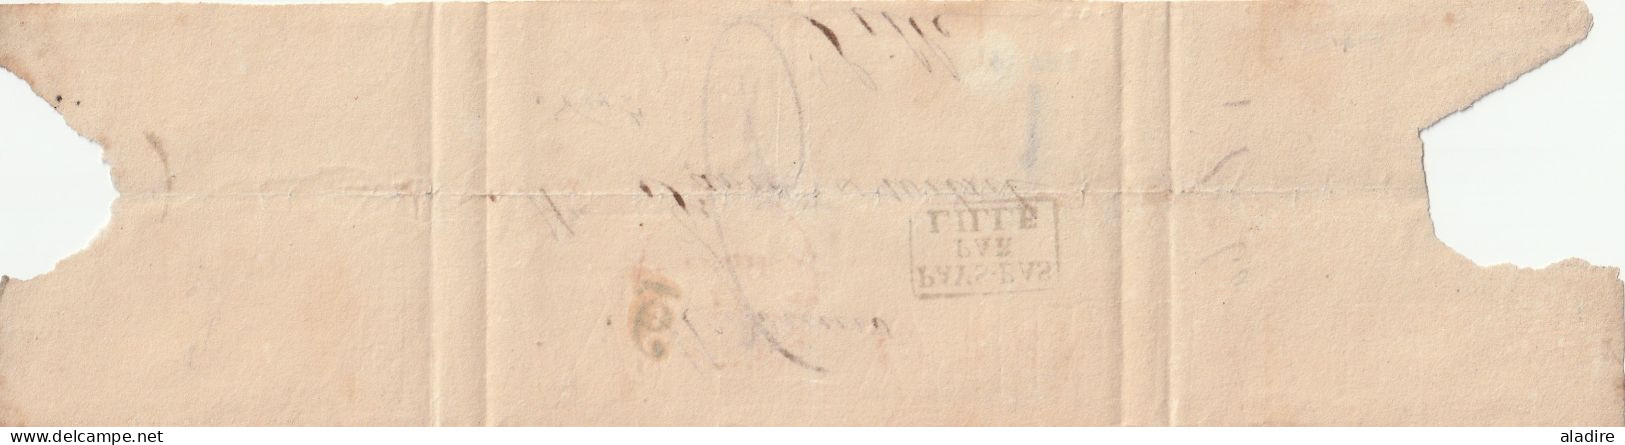 Circa 1830 - Bande De Journal De Belgique Vers Lille, France - Entrée Pays Bas Par LILLE - Taxe 6 - LPB2R - 1815-1830 (Dutch Period)